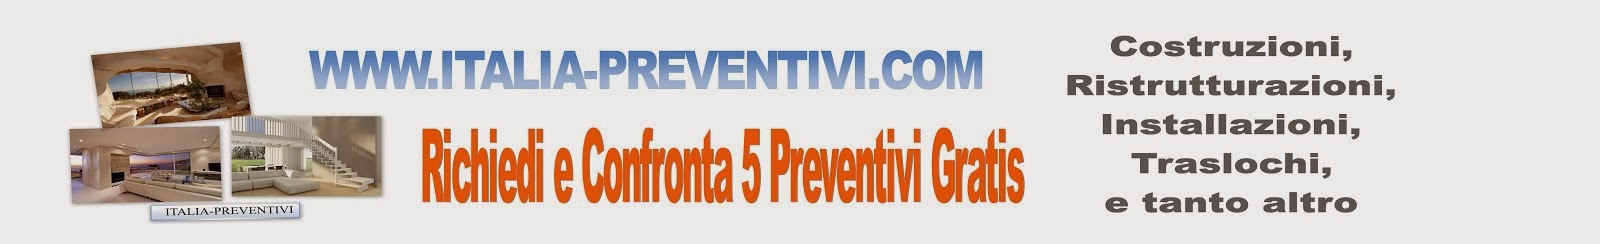 Con 1 clic Richiedi e Confronti 5 Preventivi gratis e sceglio il migliore per te